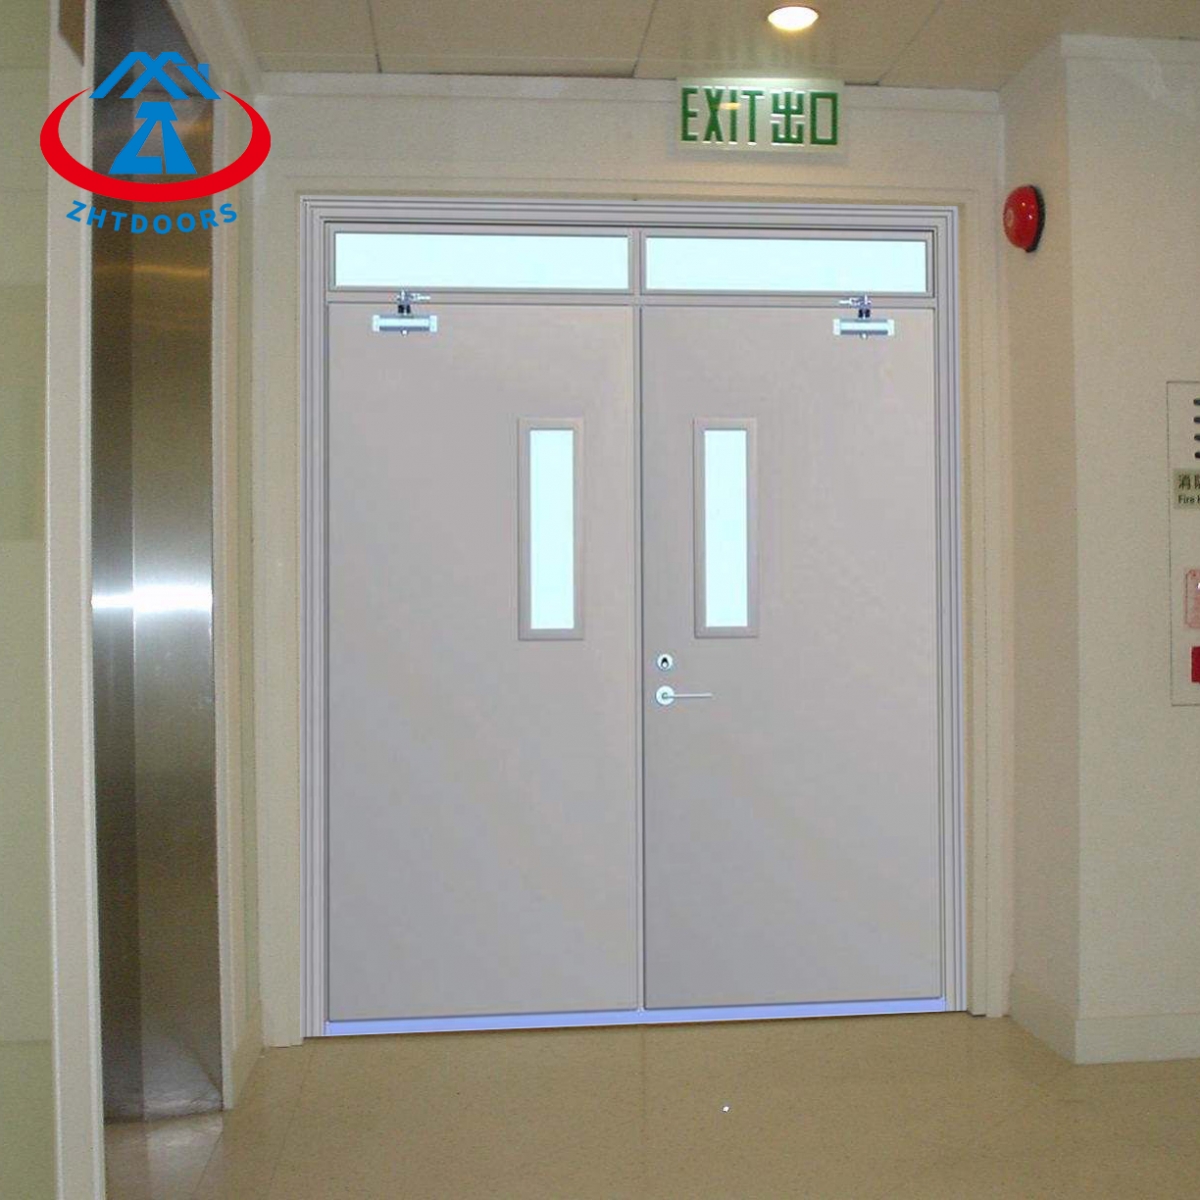 Fd30 Fire Doors 1 Piece-ZTFIRE Door- Fire Door,Fireproof Door,Fire rated Door,Fire Resistant Door,Steel Door,Metal Door,Exit Door